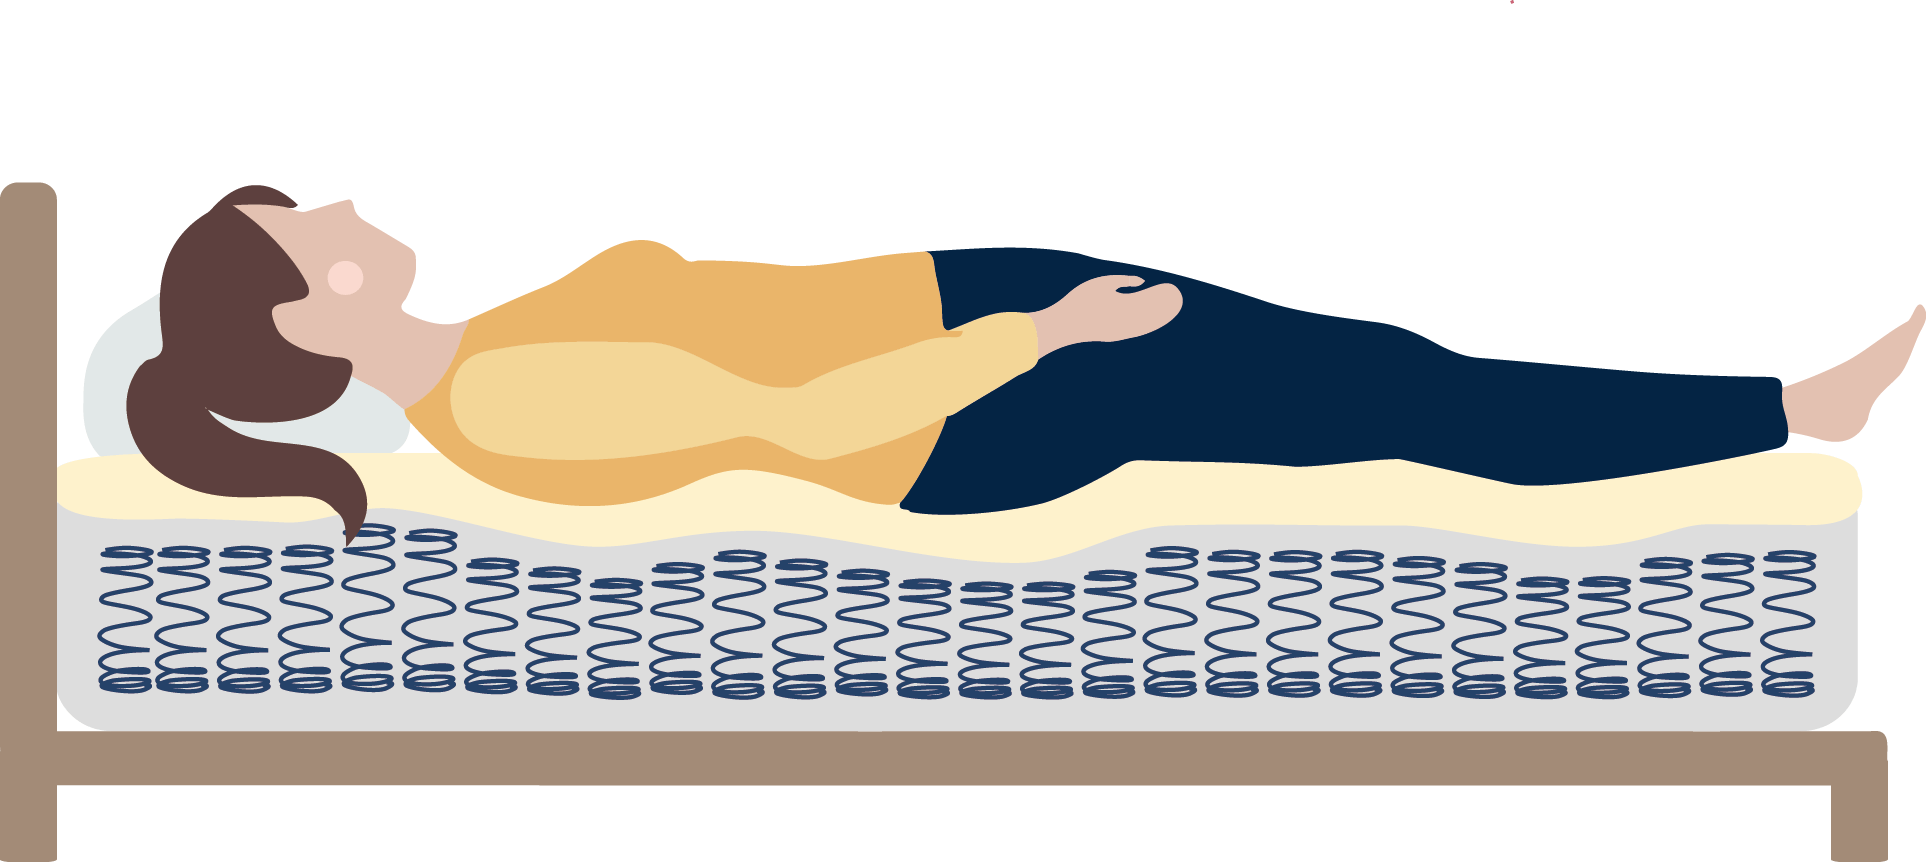 身體放鬆躺平床墊彈簧平均受力